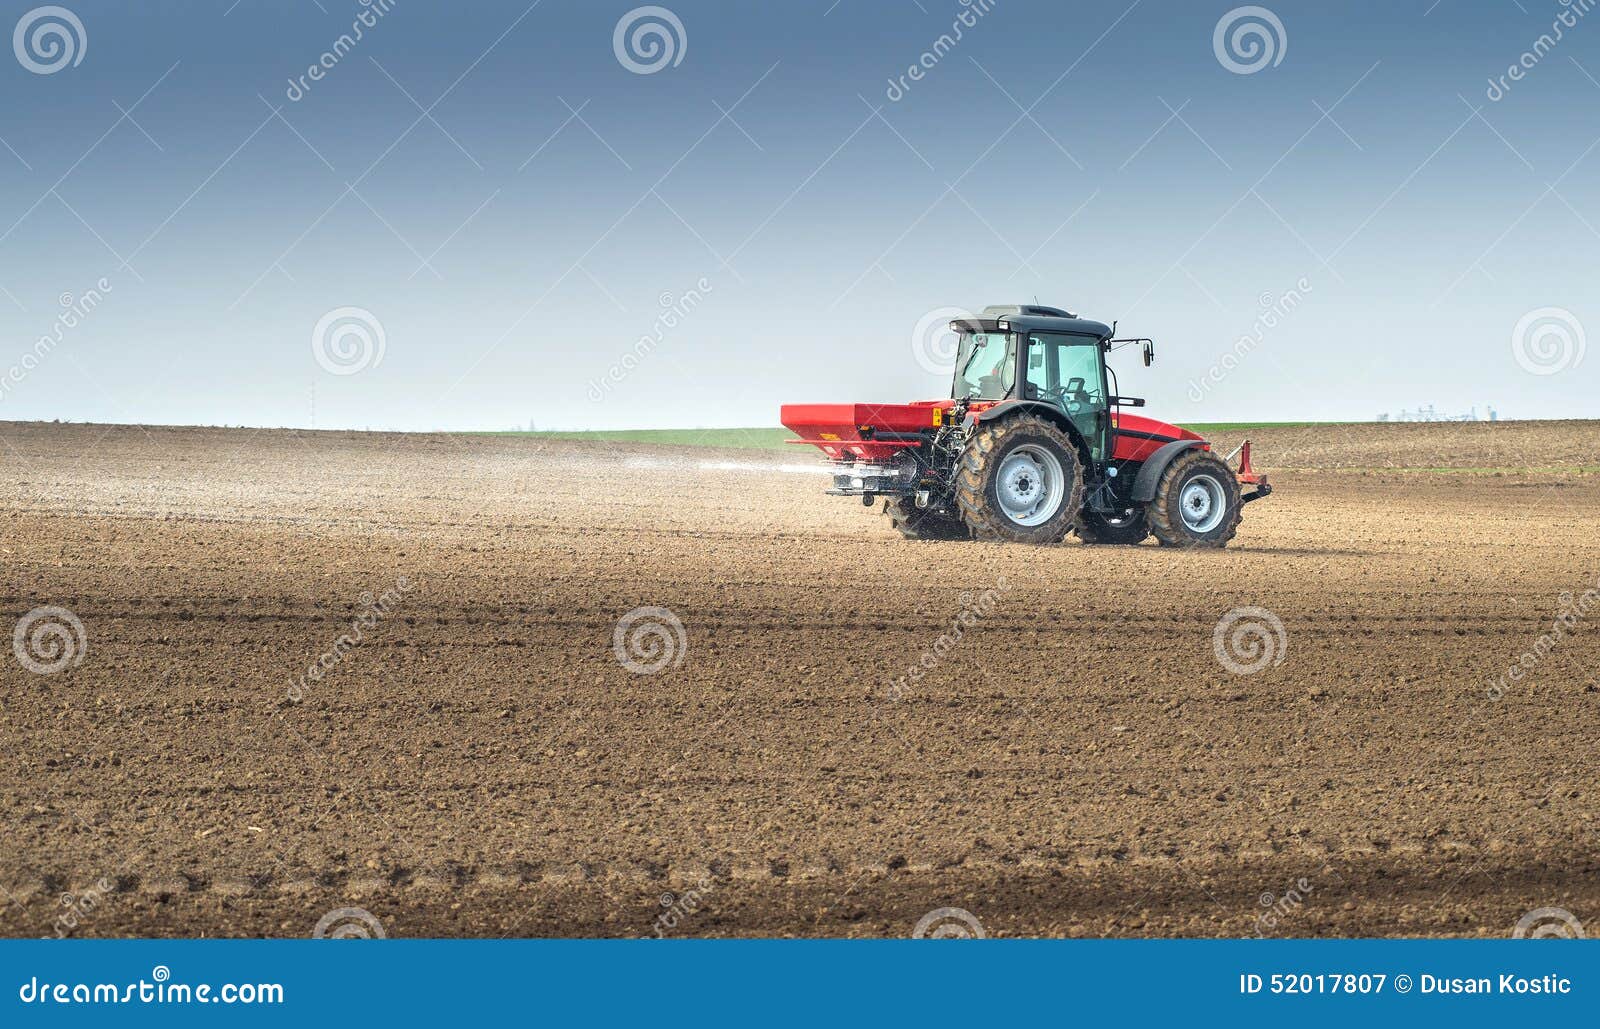 fertilizer agriculture